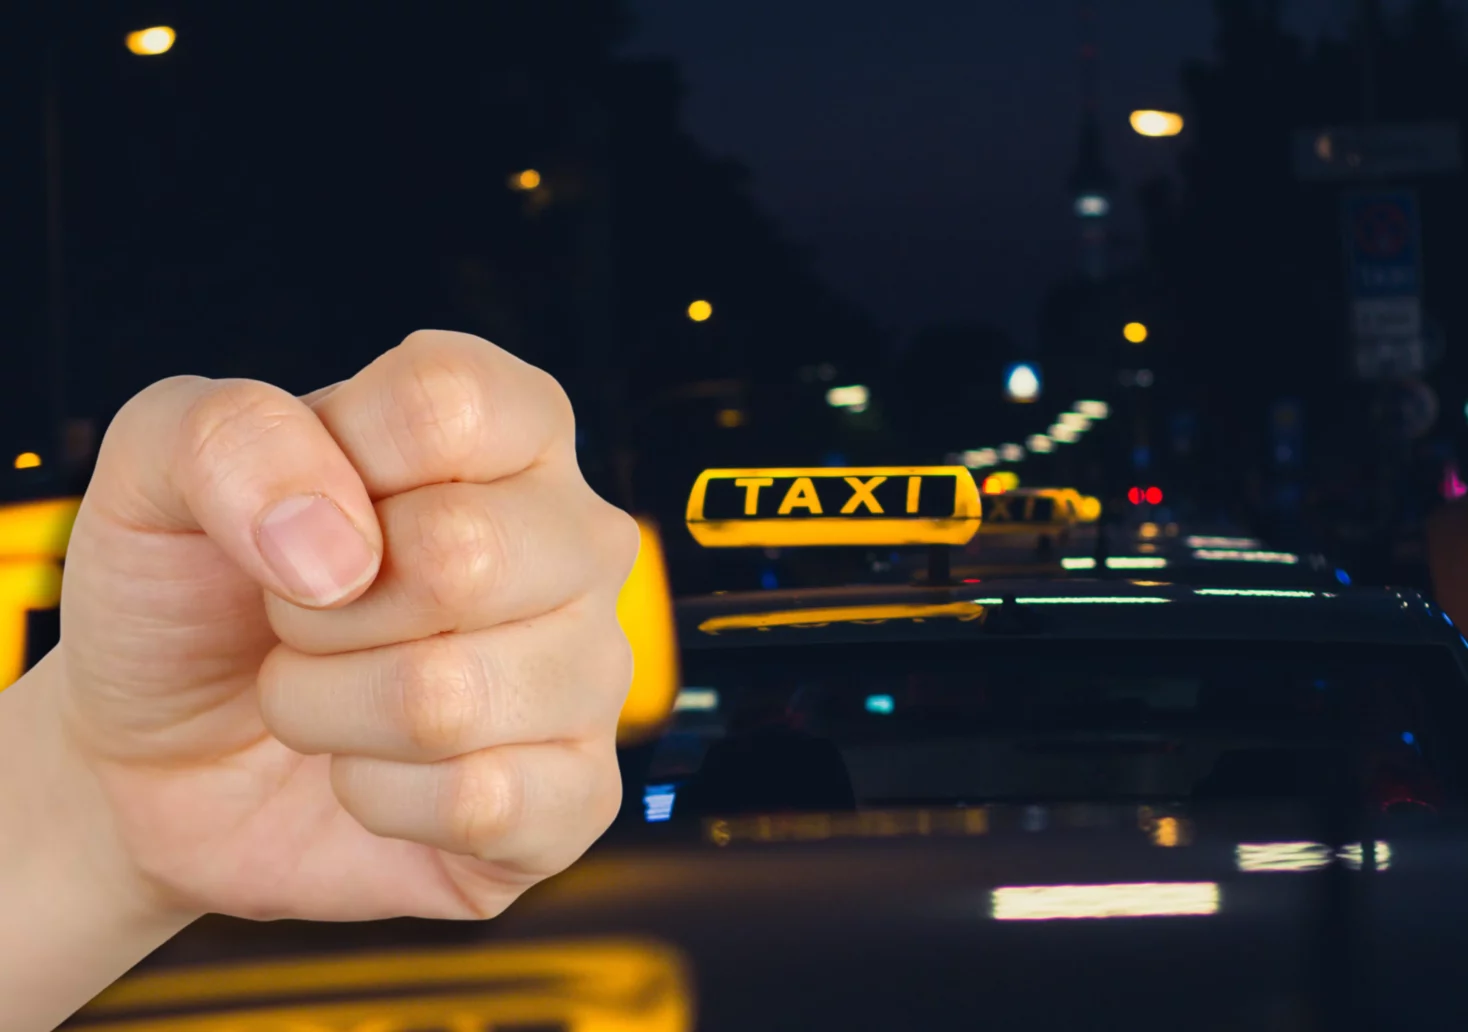 Eine Bildmontage auf 5min.at zeigt jemanden, der die Faust zeigt und Taxis im Hintergrund.